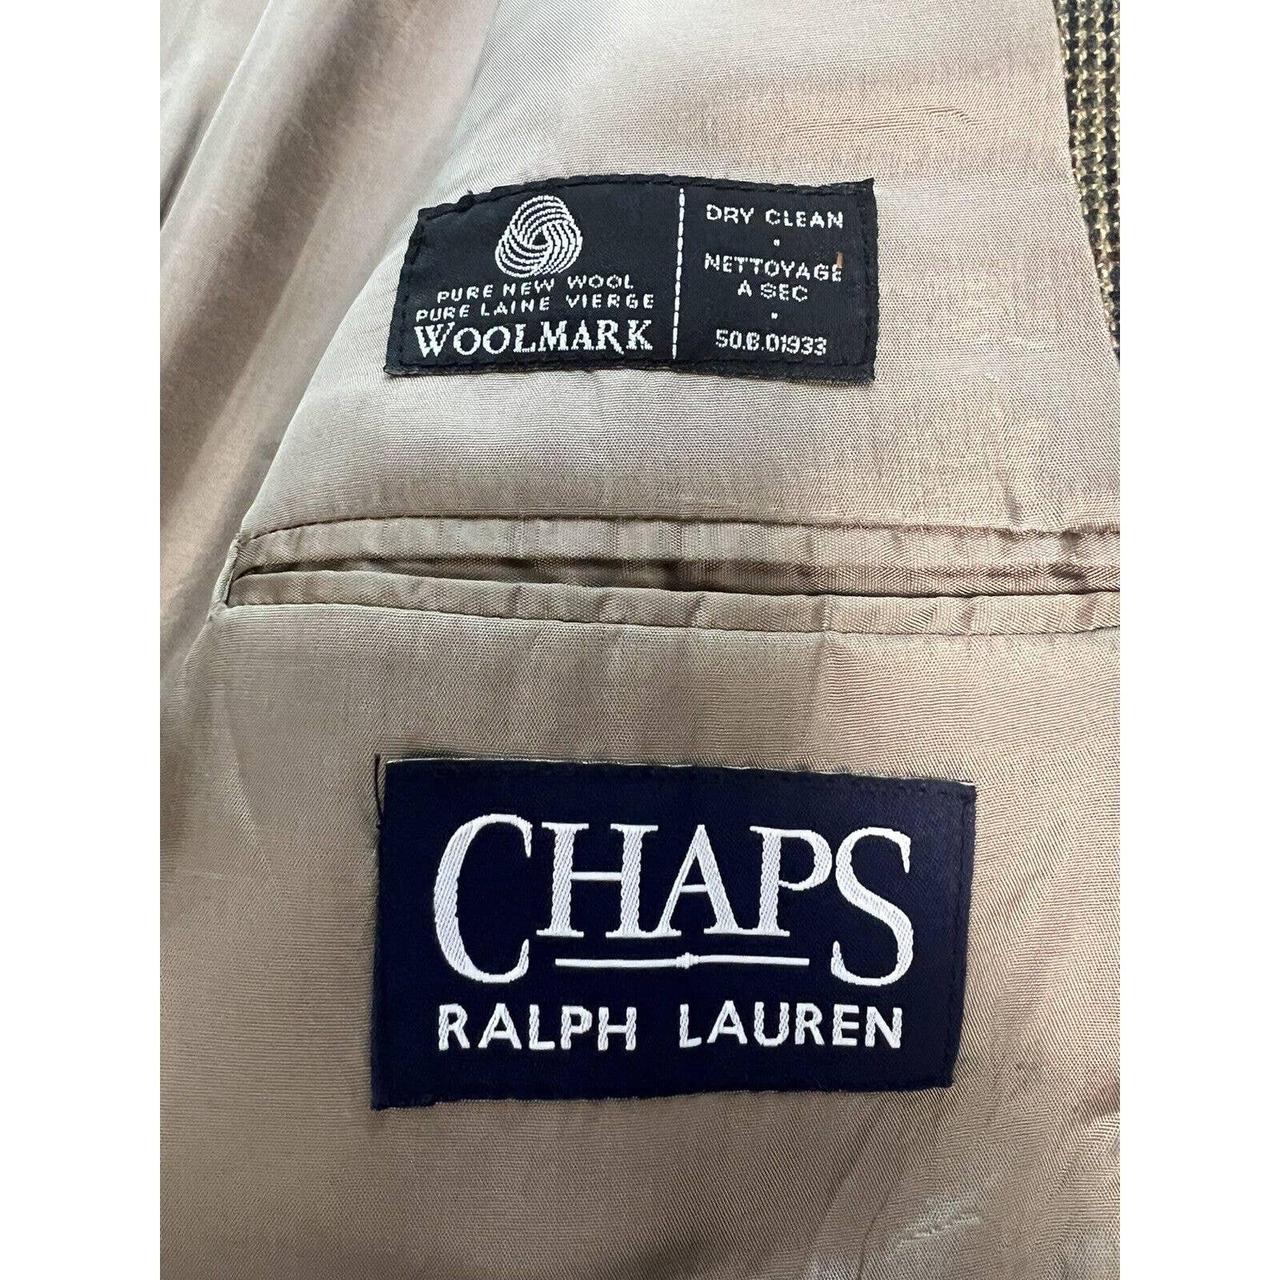 Ralph Lauren Chaps 2 Button Sport Coat 40R Lambswool... - Depop